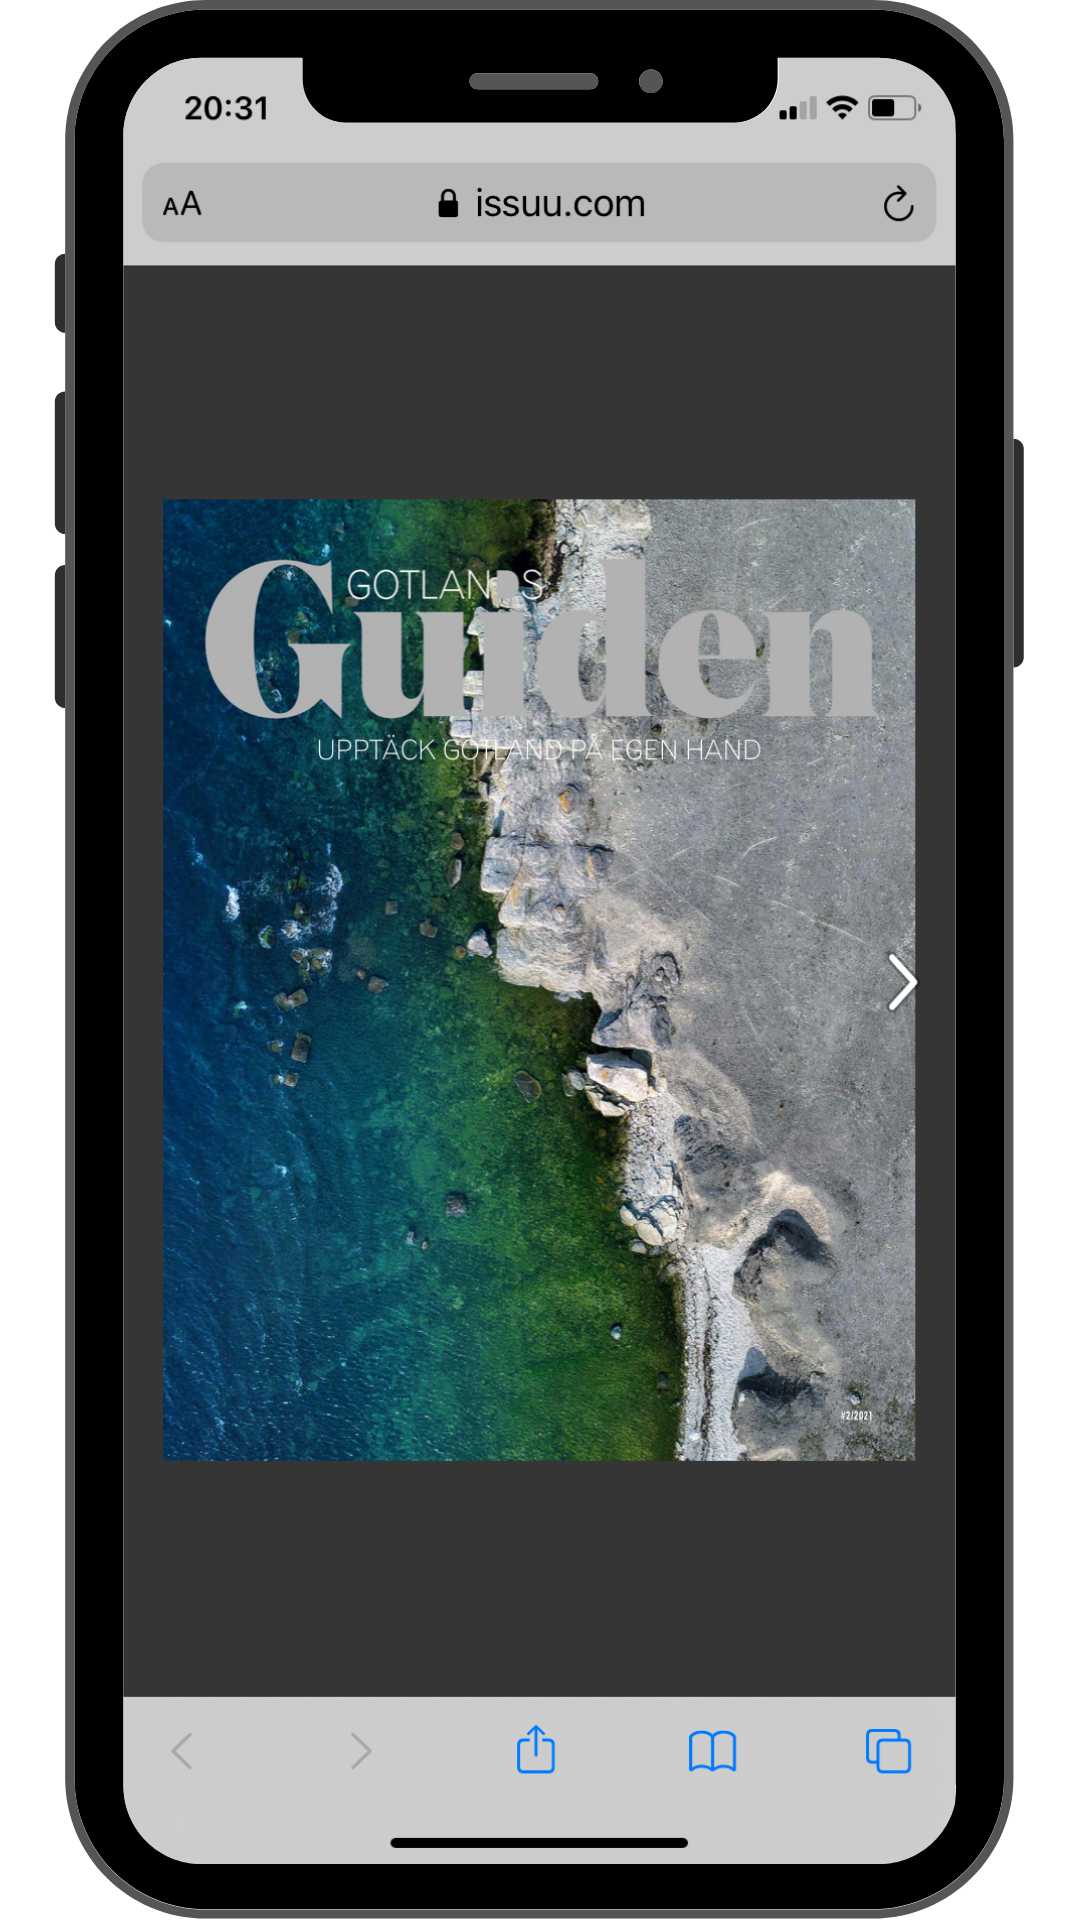 Gotlandsguiden är ett magasin med information om Fårö och Gotland